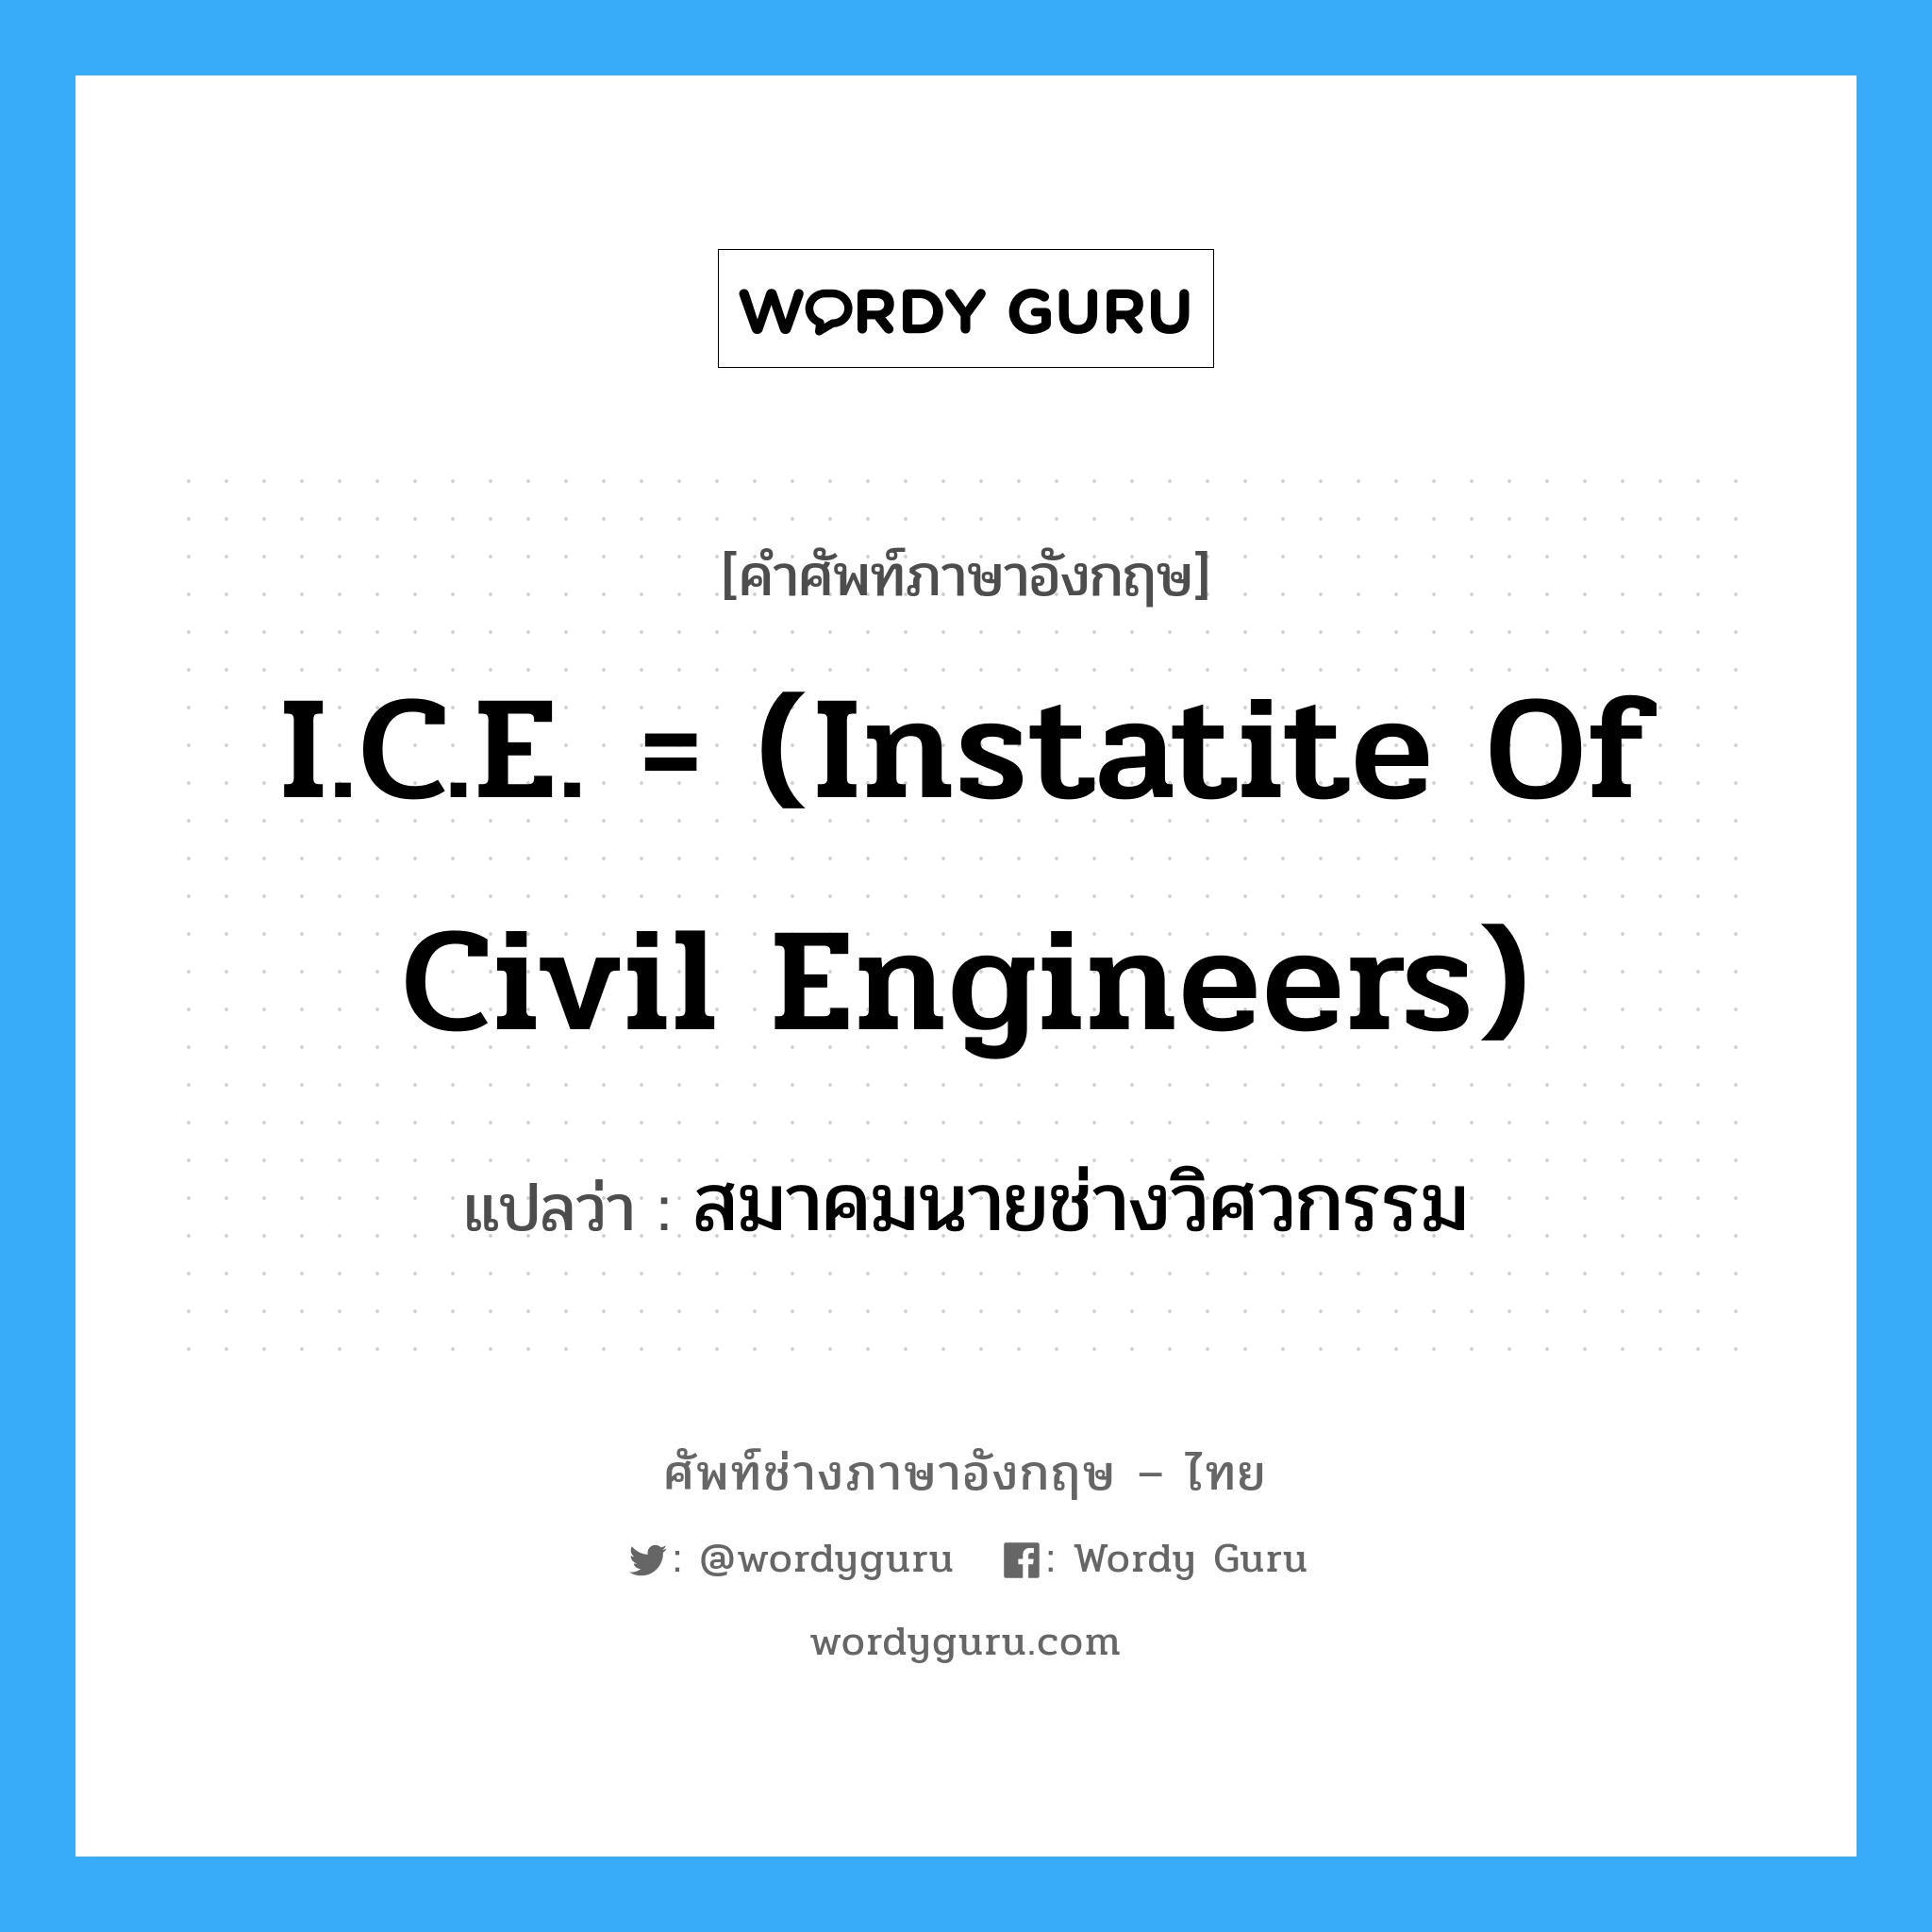 สมาคมนายช่างวิศวกรรม ภาษาอังกฤษ?, คำศัพท์ช่างภาษาอังกฤษ - ไทย สมาคมนายช่างวิศวกรรม คำศัพท์ภาษาอังกฤษ สมาคมนายช่างวิศวกรรม แปลว่า I.C.E. = (Instatite of Civil Engineers)